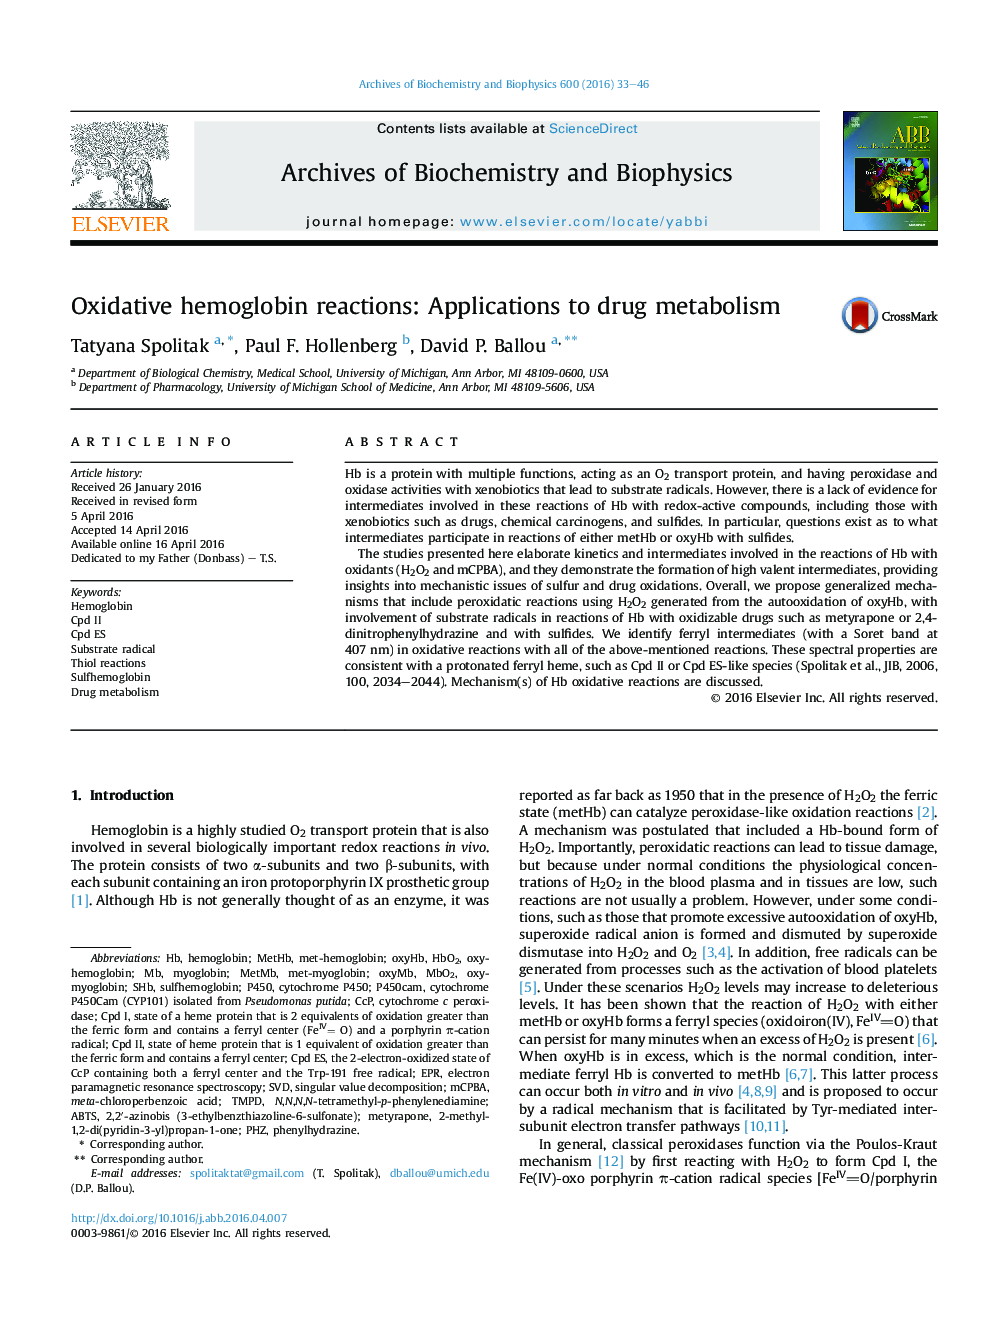 واکنش های اکسیداتیو هموگلوبین: برنامه های کاربردی برای متابولیسم مواد مخدر 